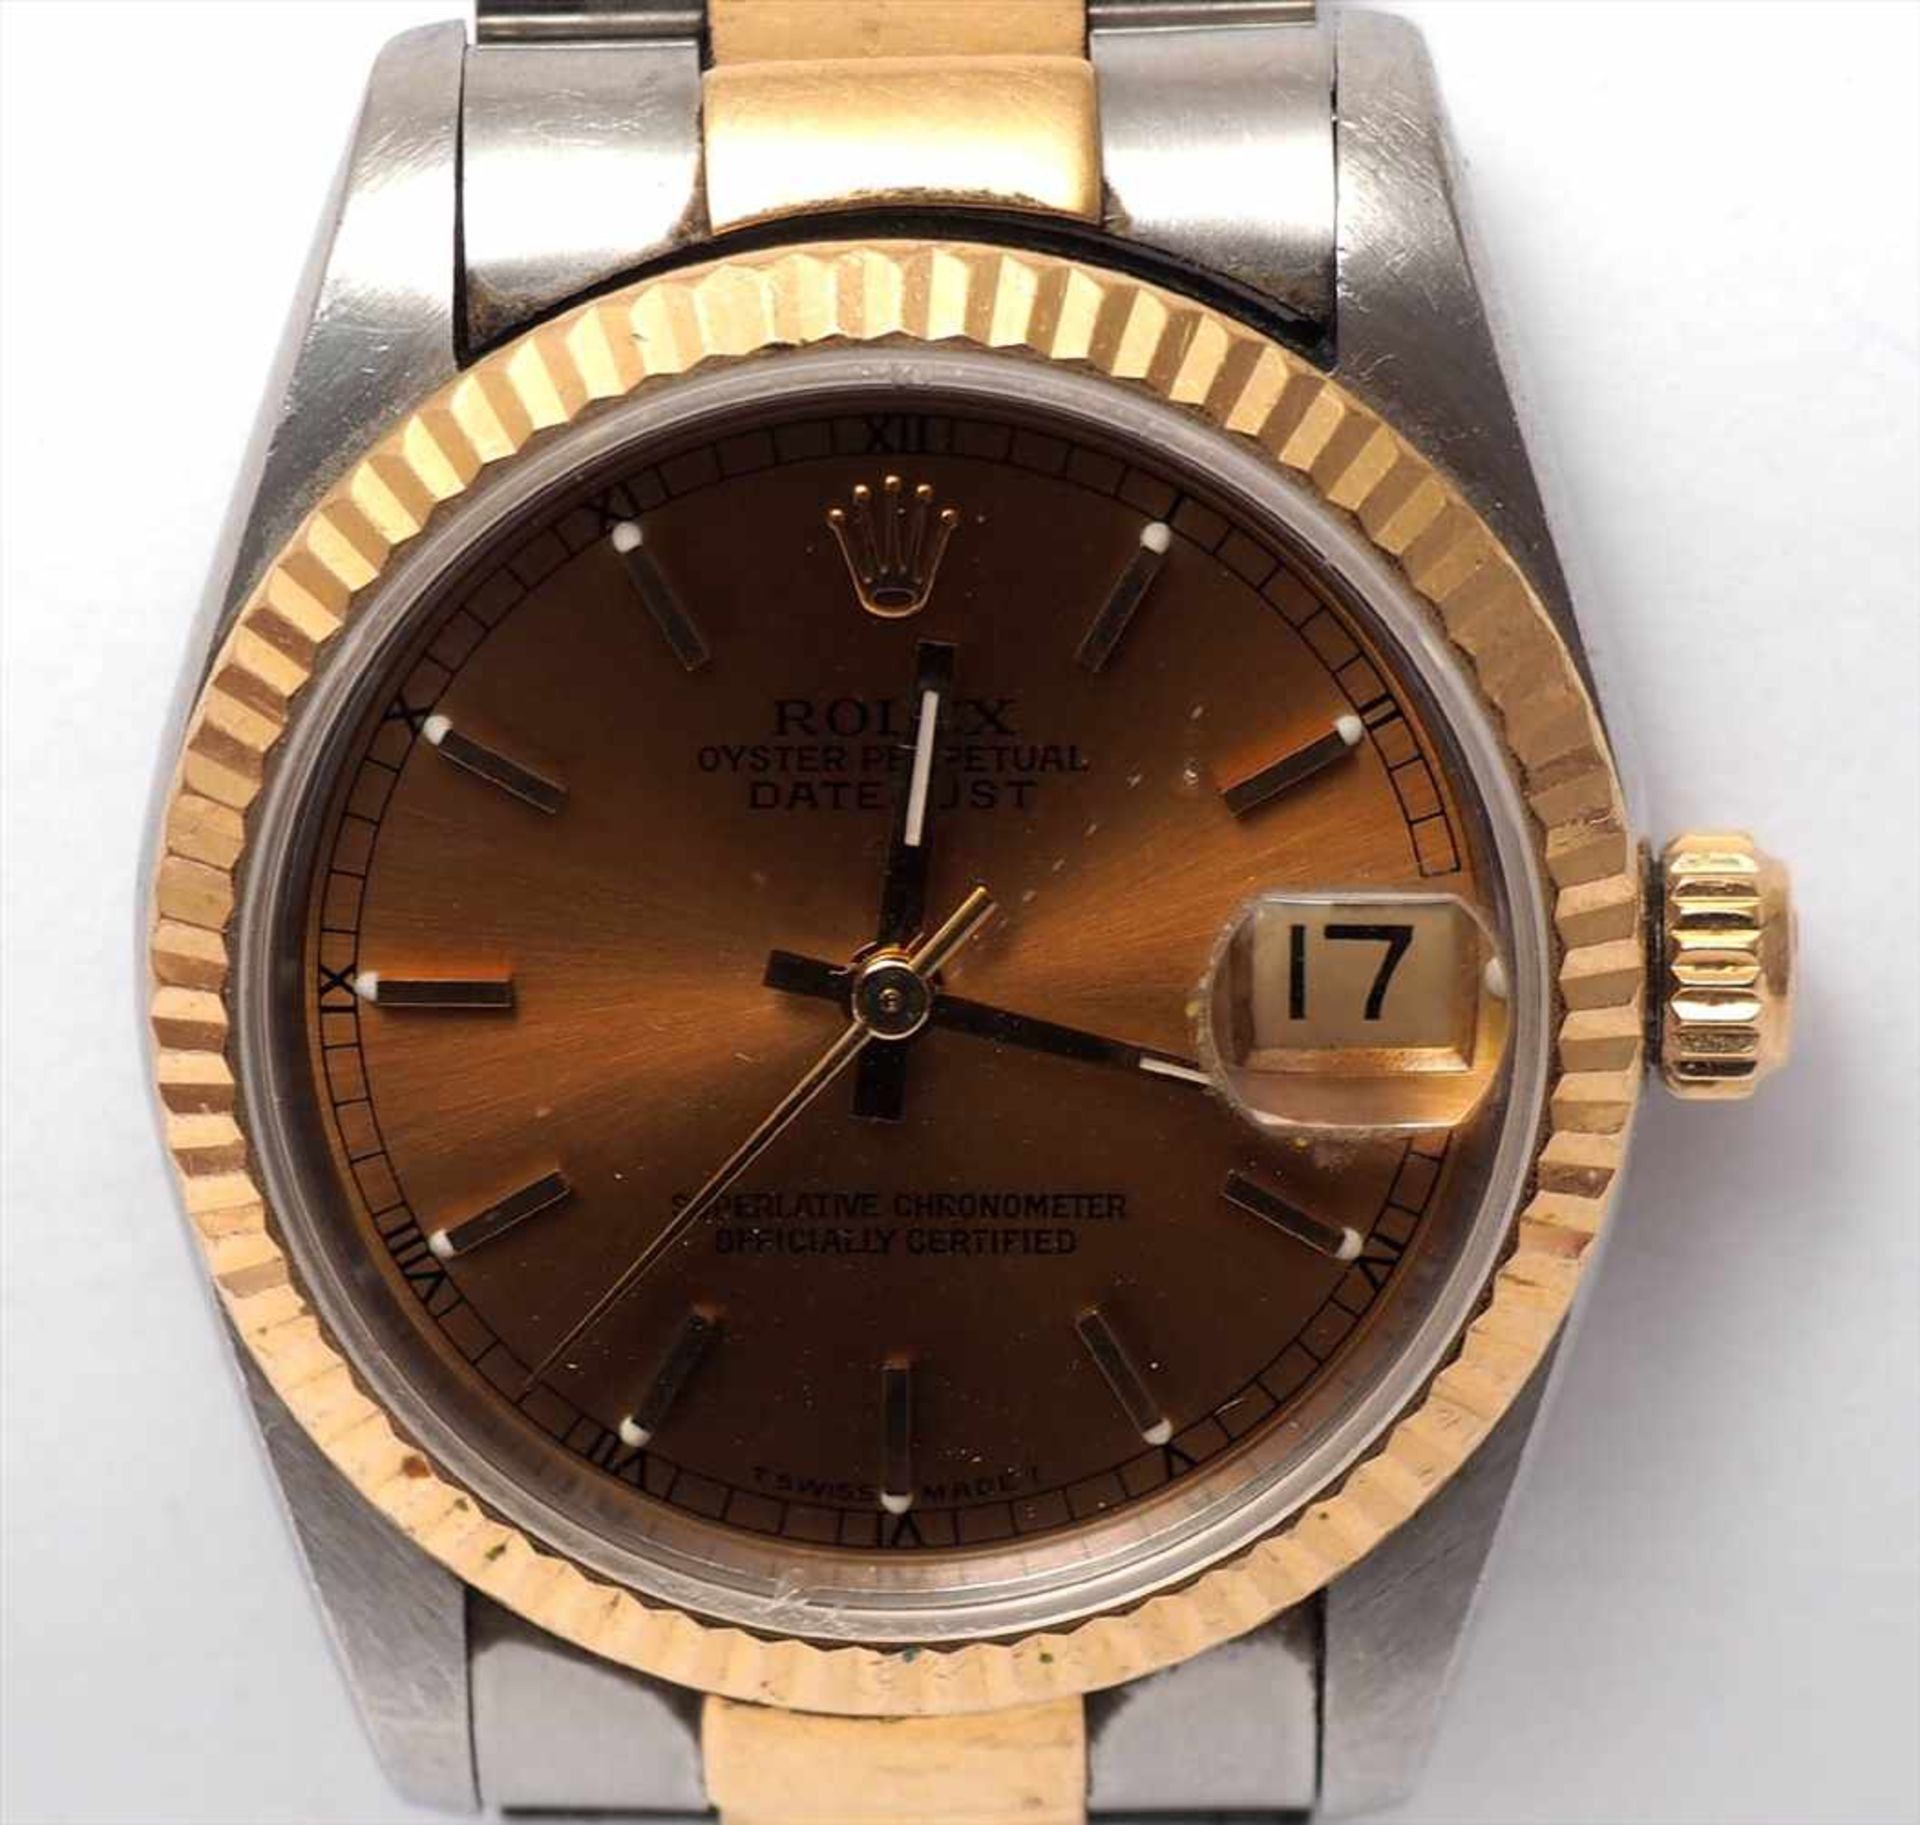 Unisex-Armbanduhr, Rolex Oyster Perpetual DatejustGoldfarbenes Zifferblatt, Datum auf der Drei, - Image 3 of 5